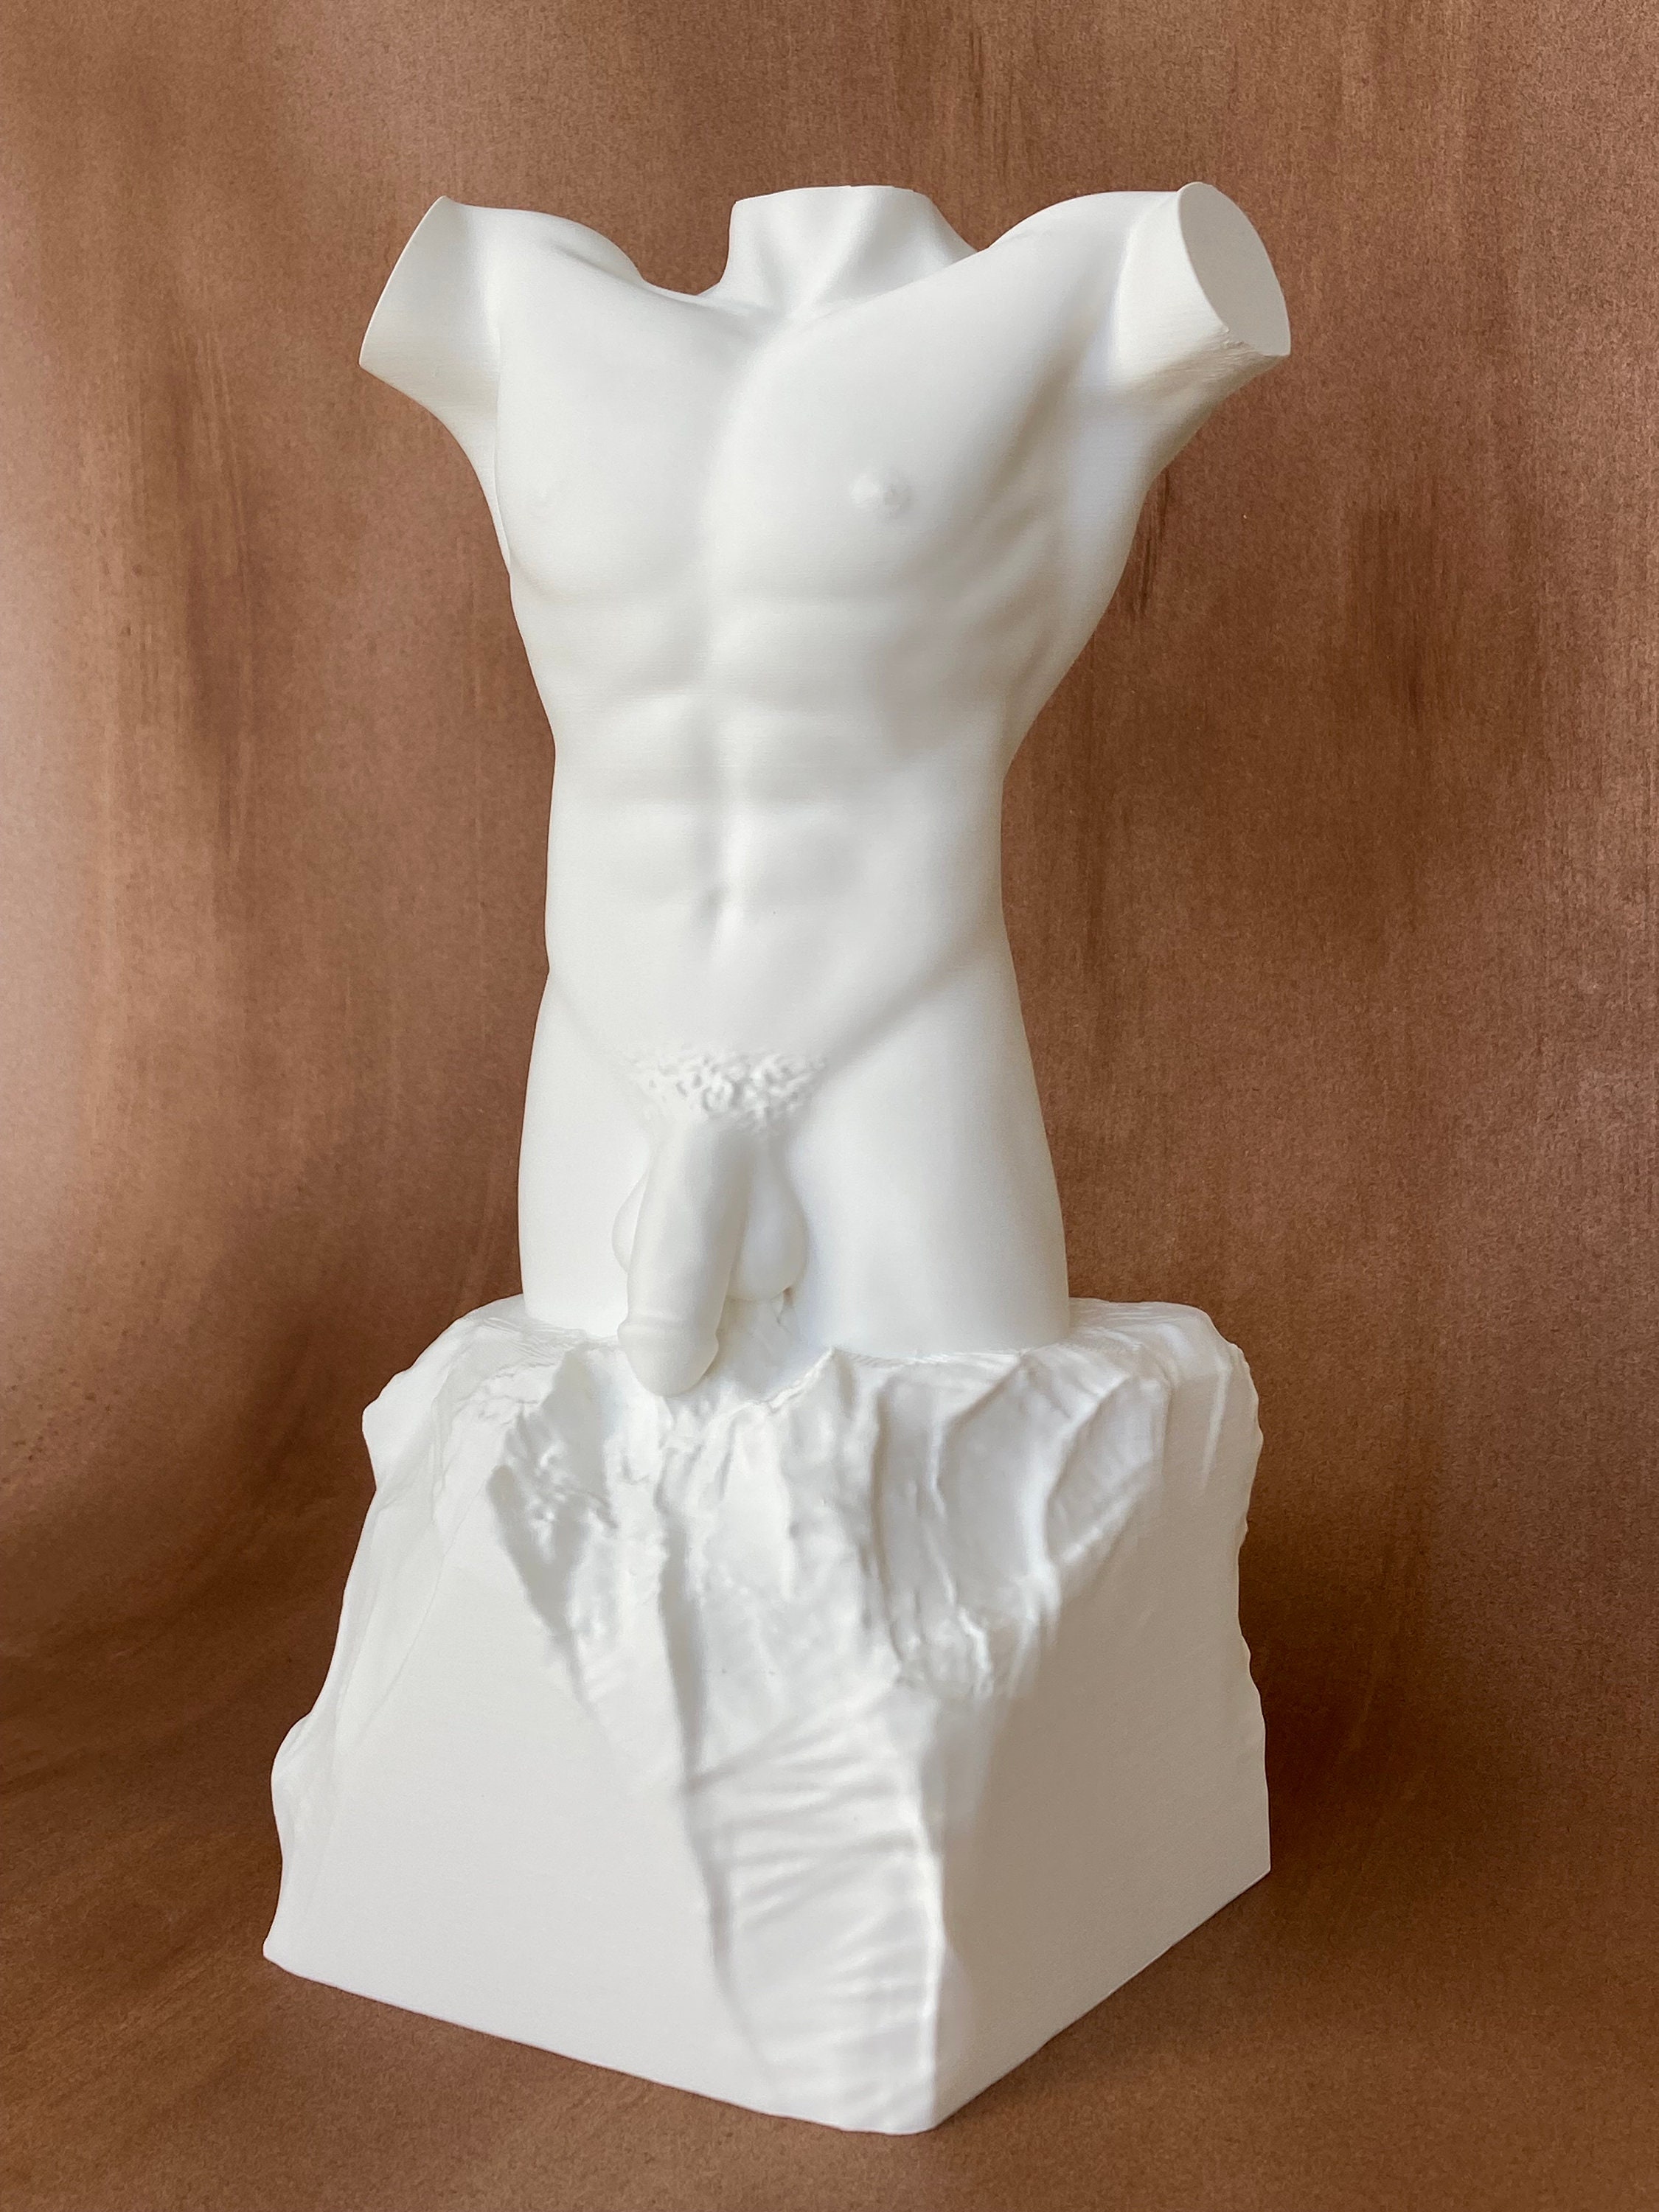 Male Torso Sculpture picture